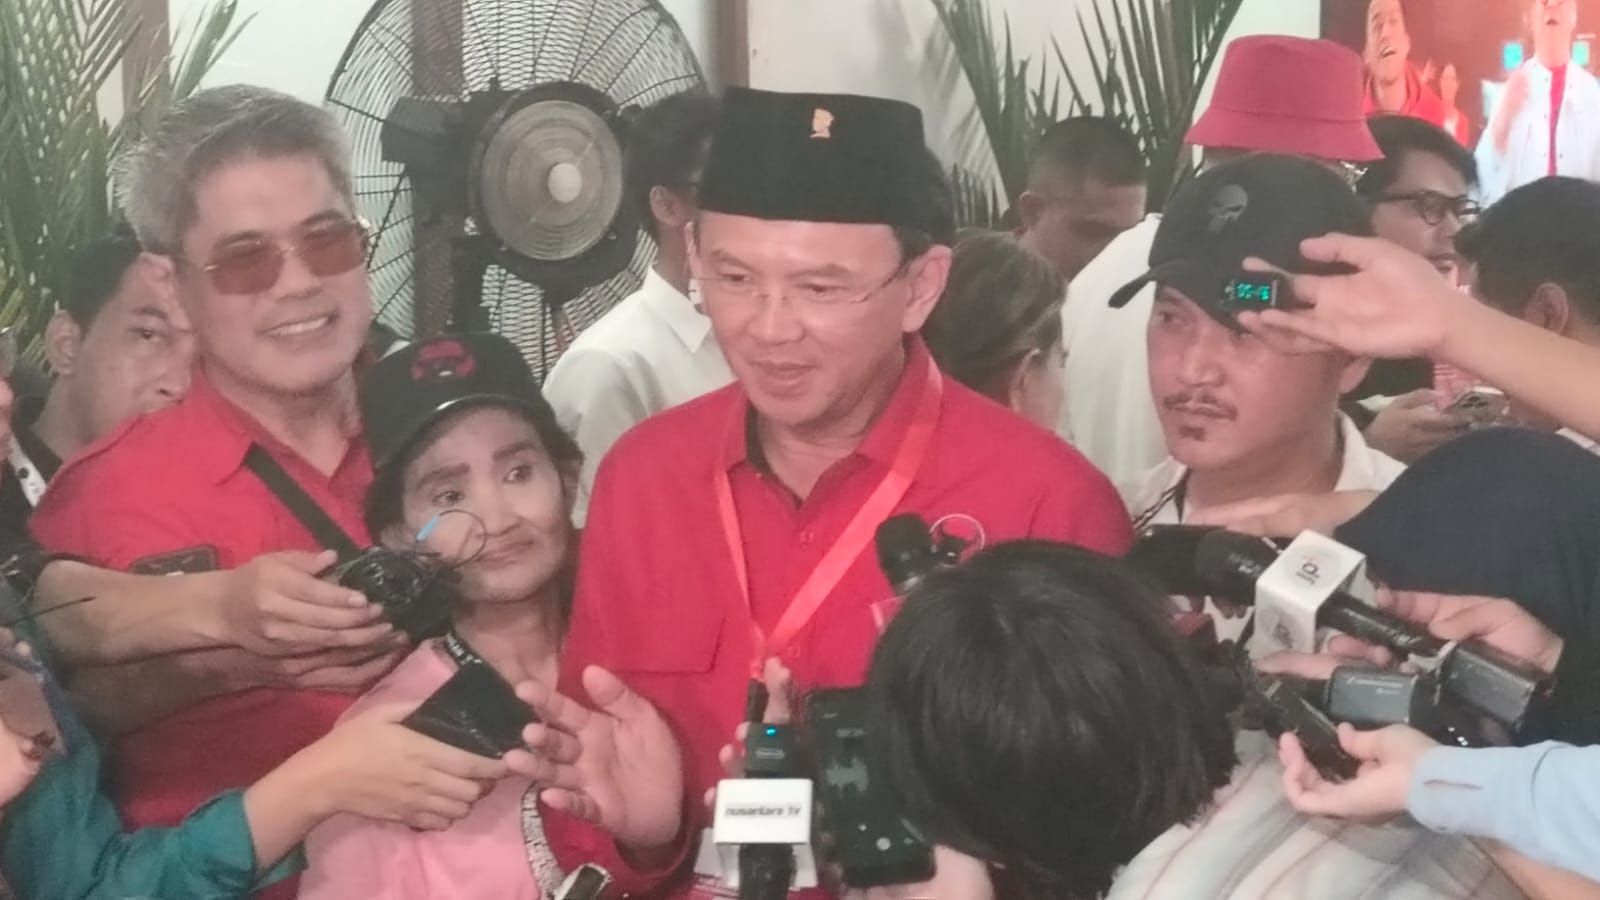 Puan Sebut Ahok Mundur dari Pertamina karena Kemauan Sendiri, Tak Dipengaruhi Megawati